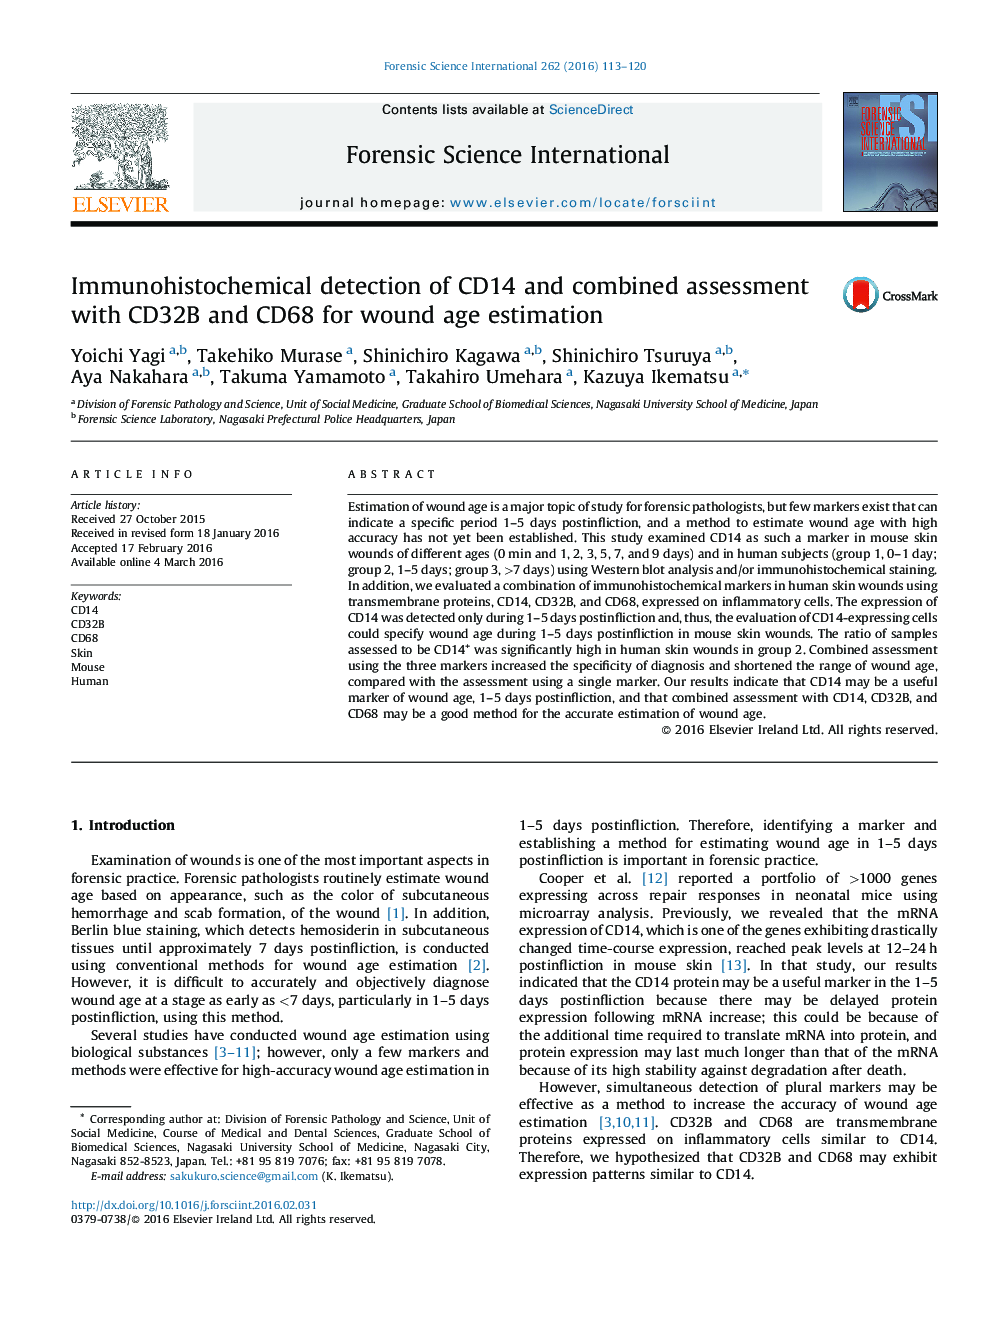 تشخیص ایمونوهیستوشیمی CD14 و ارزیابی همراه با CD32B و CD68 برای تخمین سن زخم